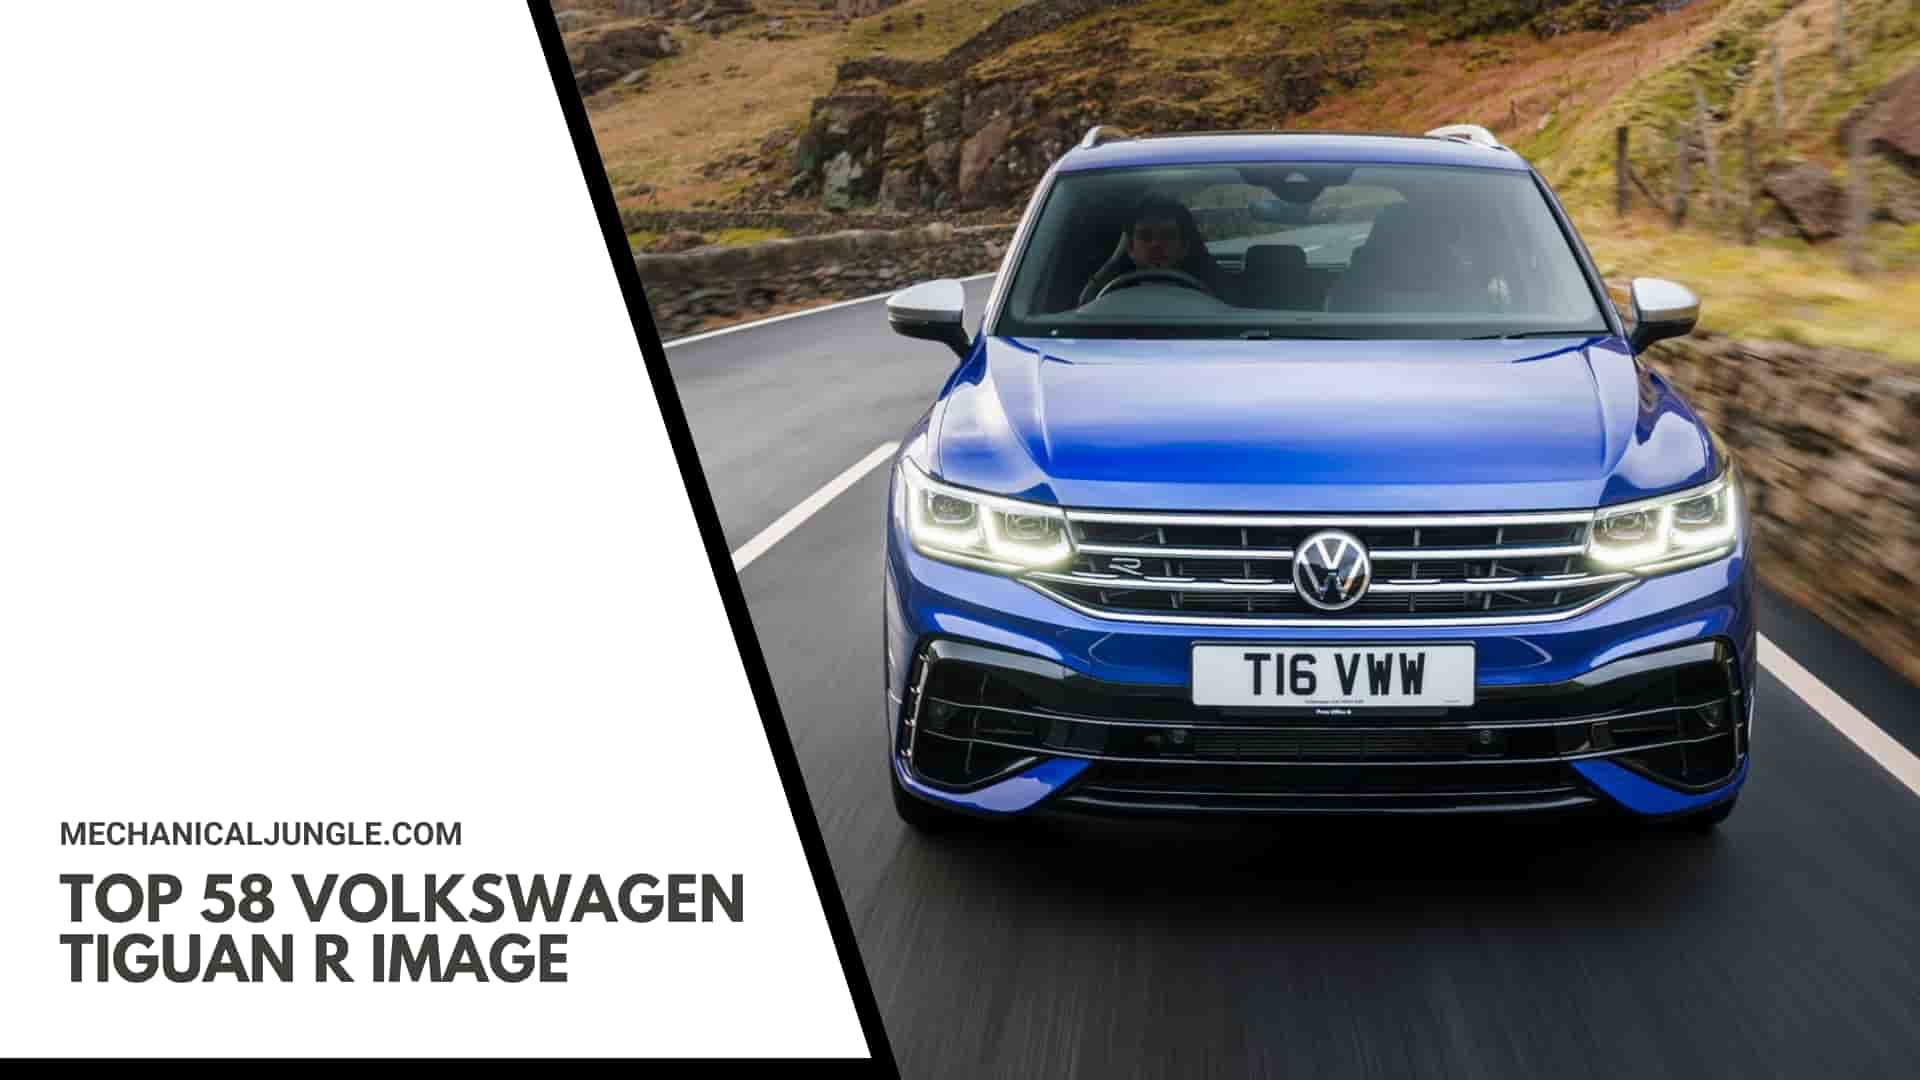 Top 58 Volkswagen Tiguan R Image